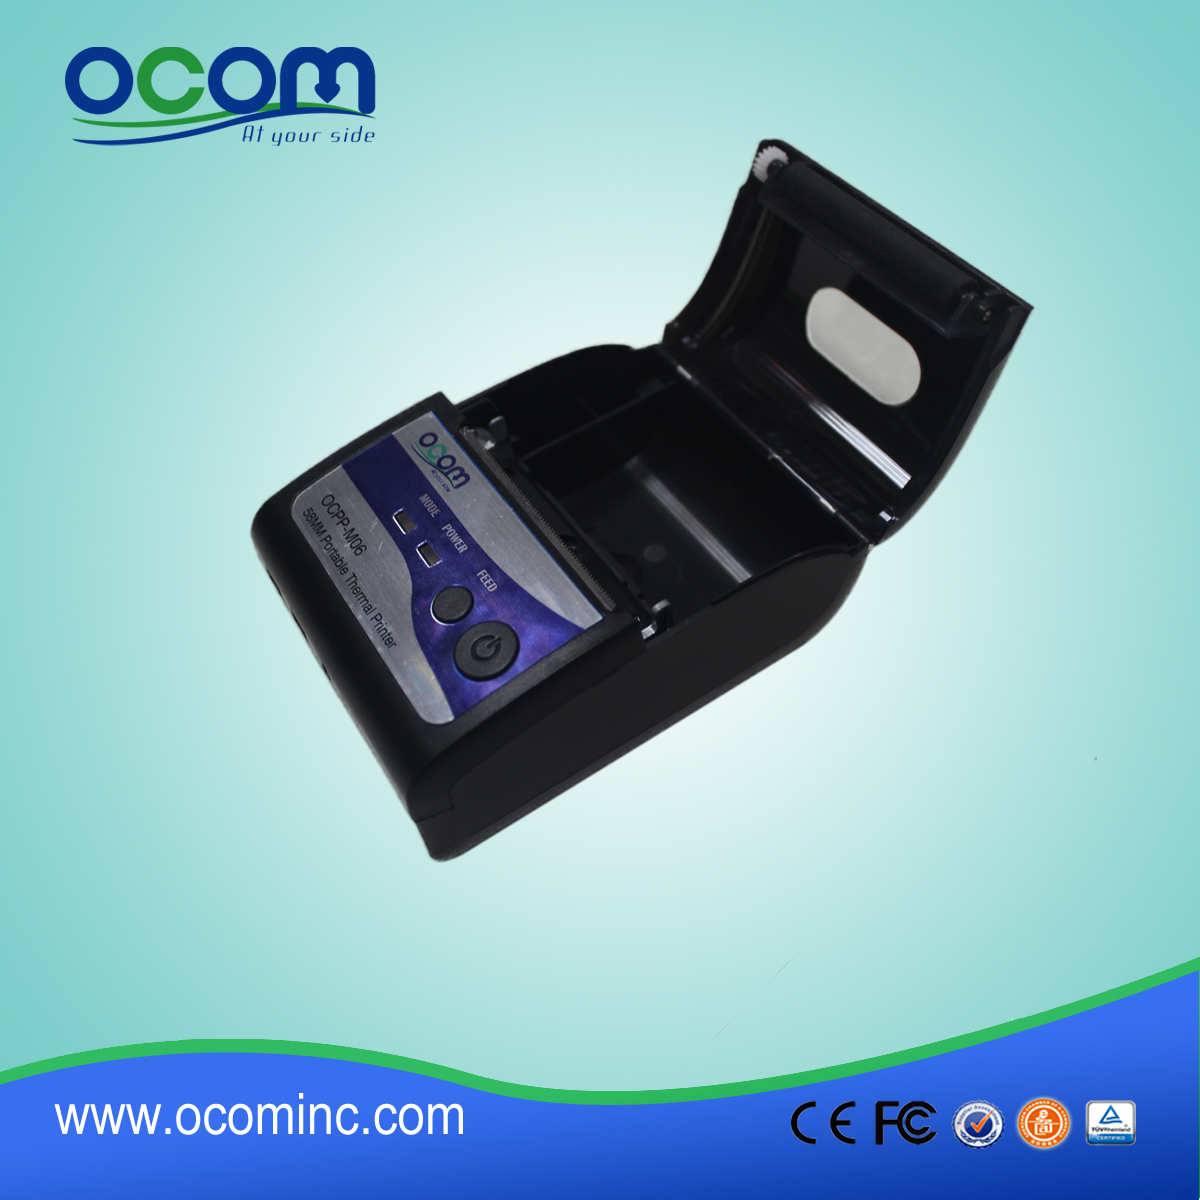 (OCPP-M06) OCOM Hot sprzedaży niski koszt android drukarki pos, drukarki pos 58mm